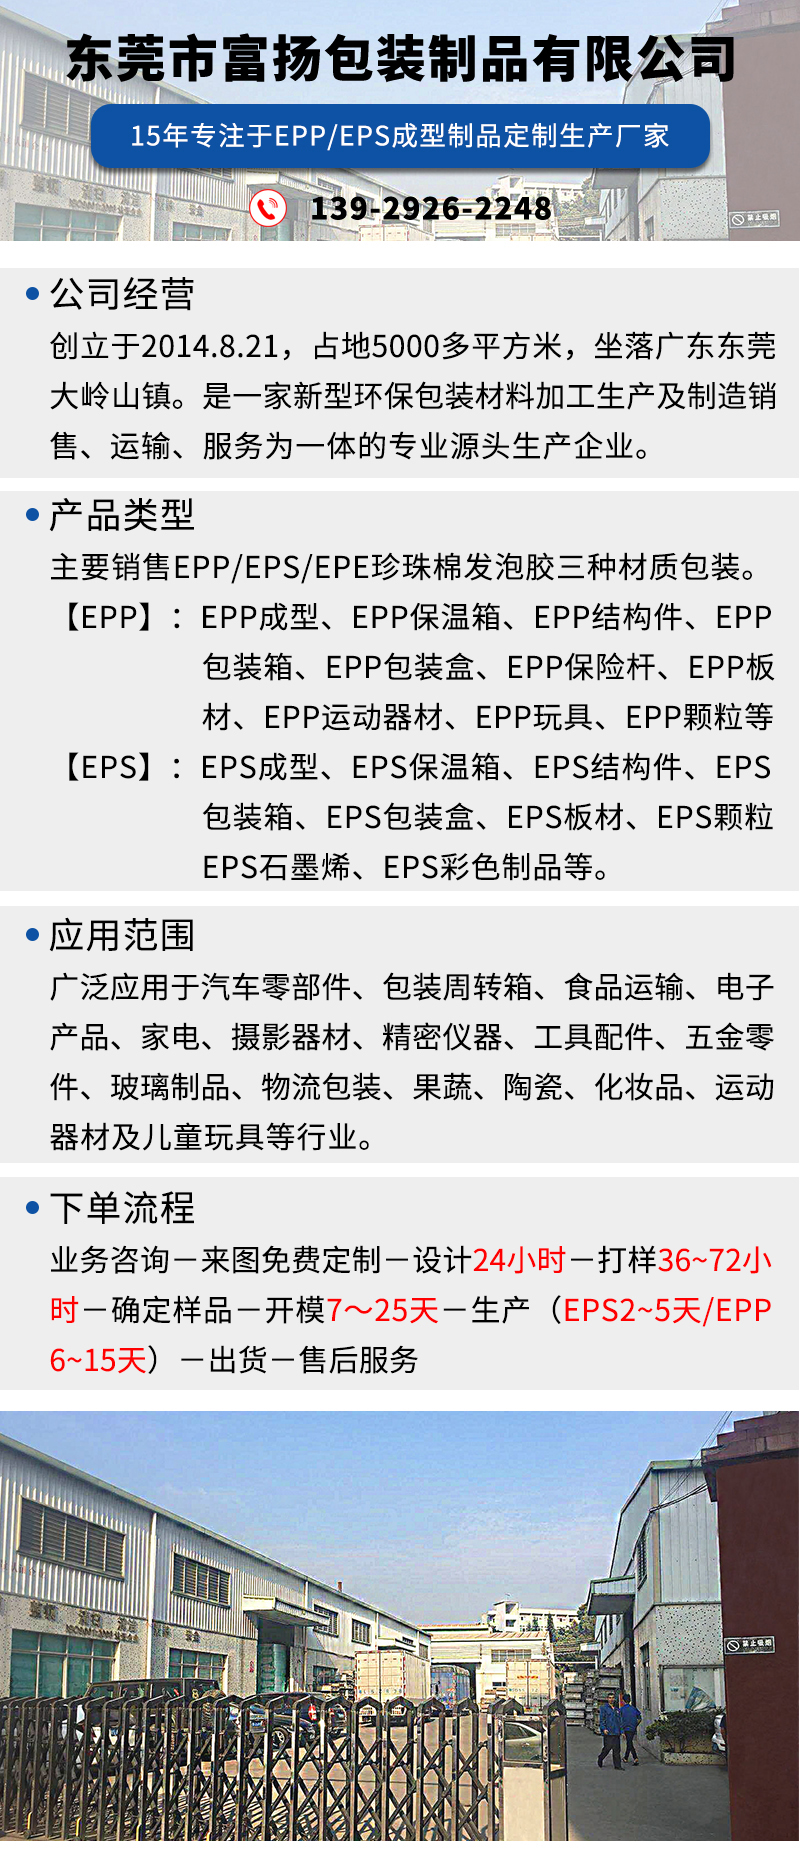 官网EPP探测仪包装箱_01.jpg